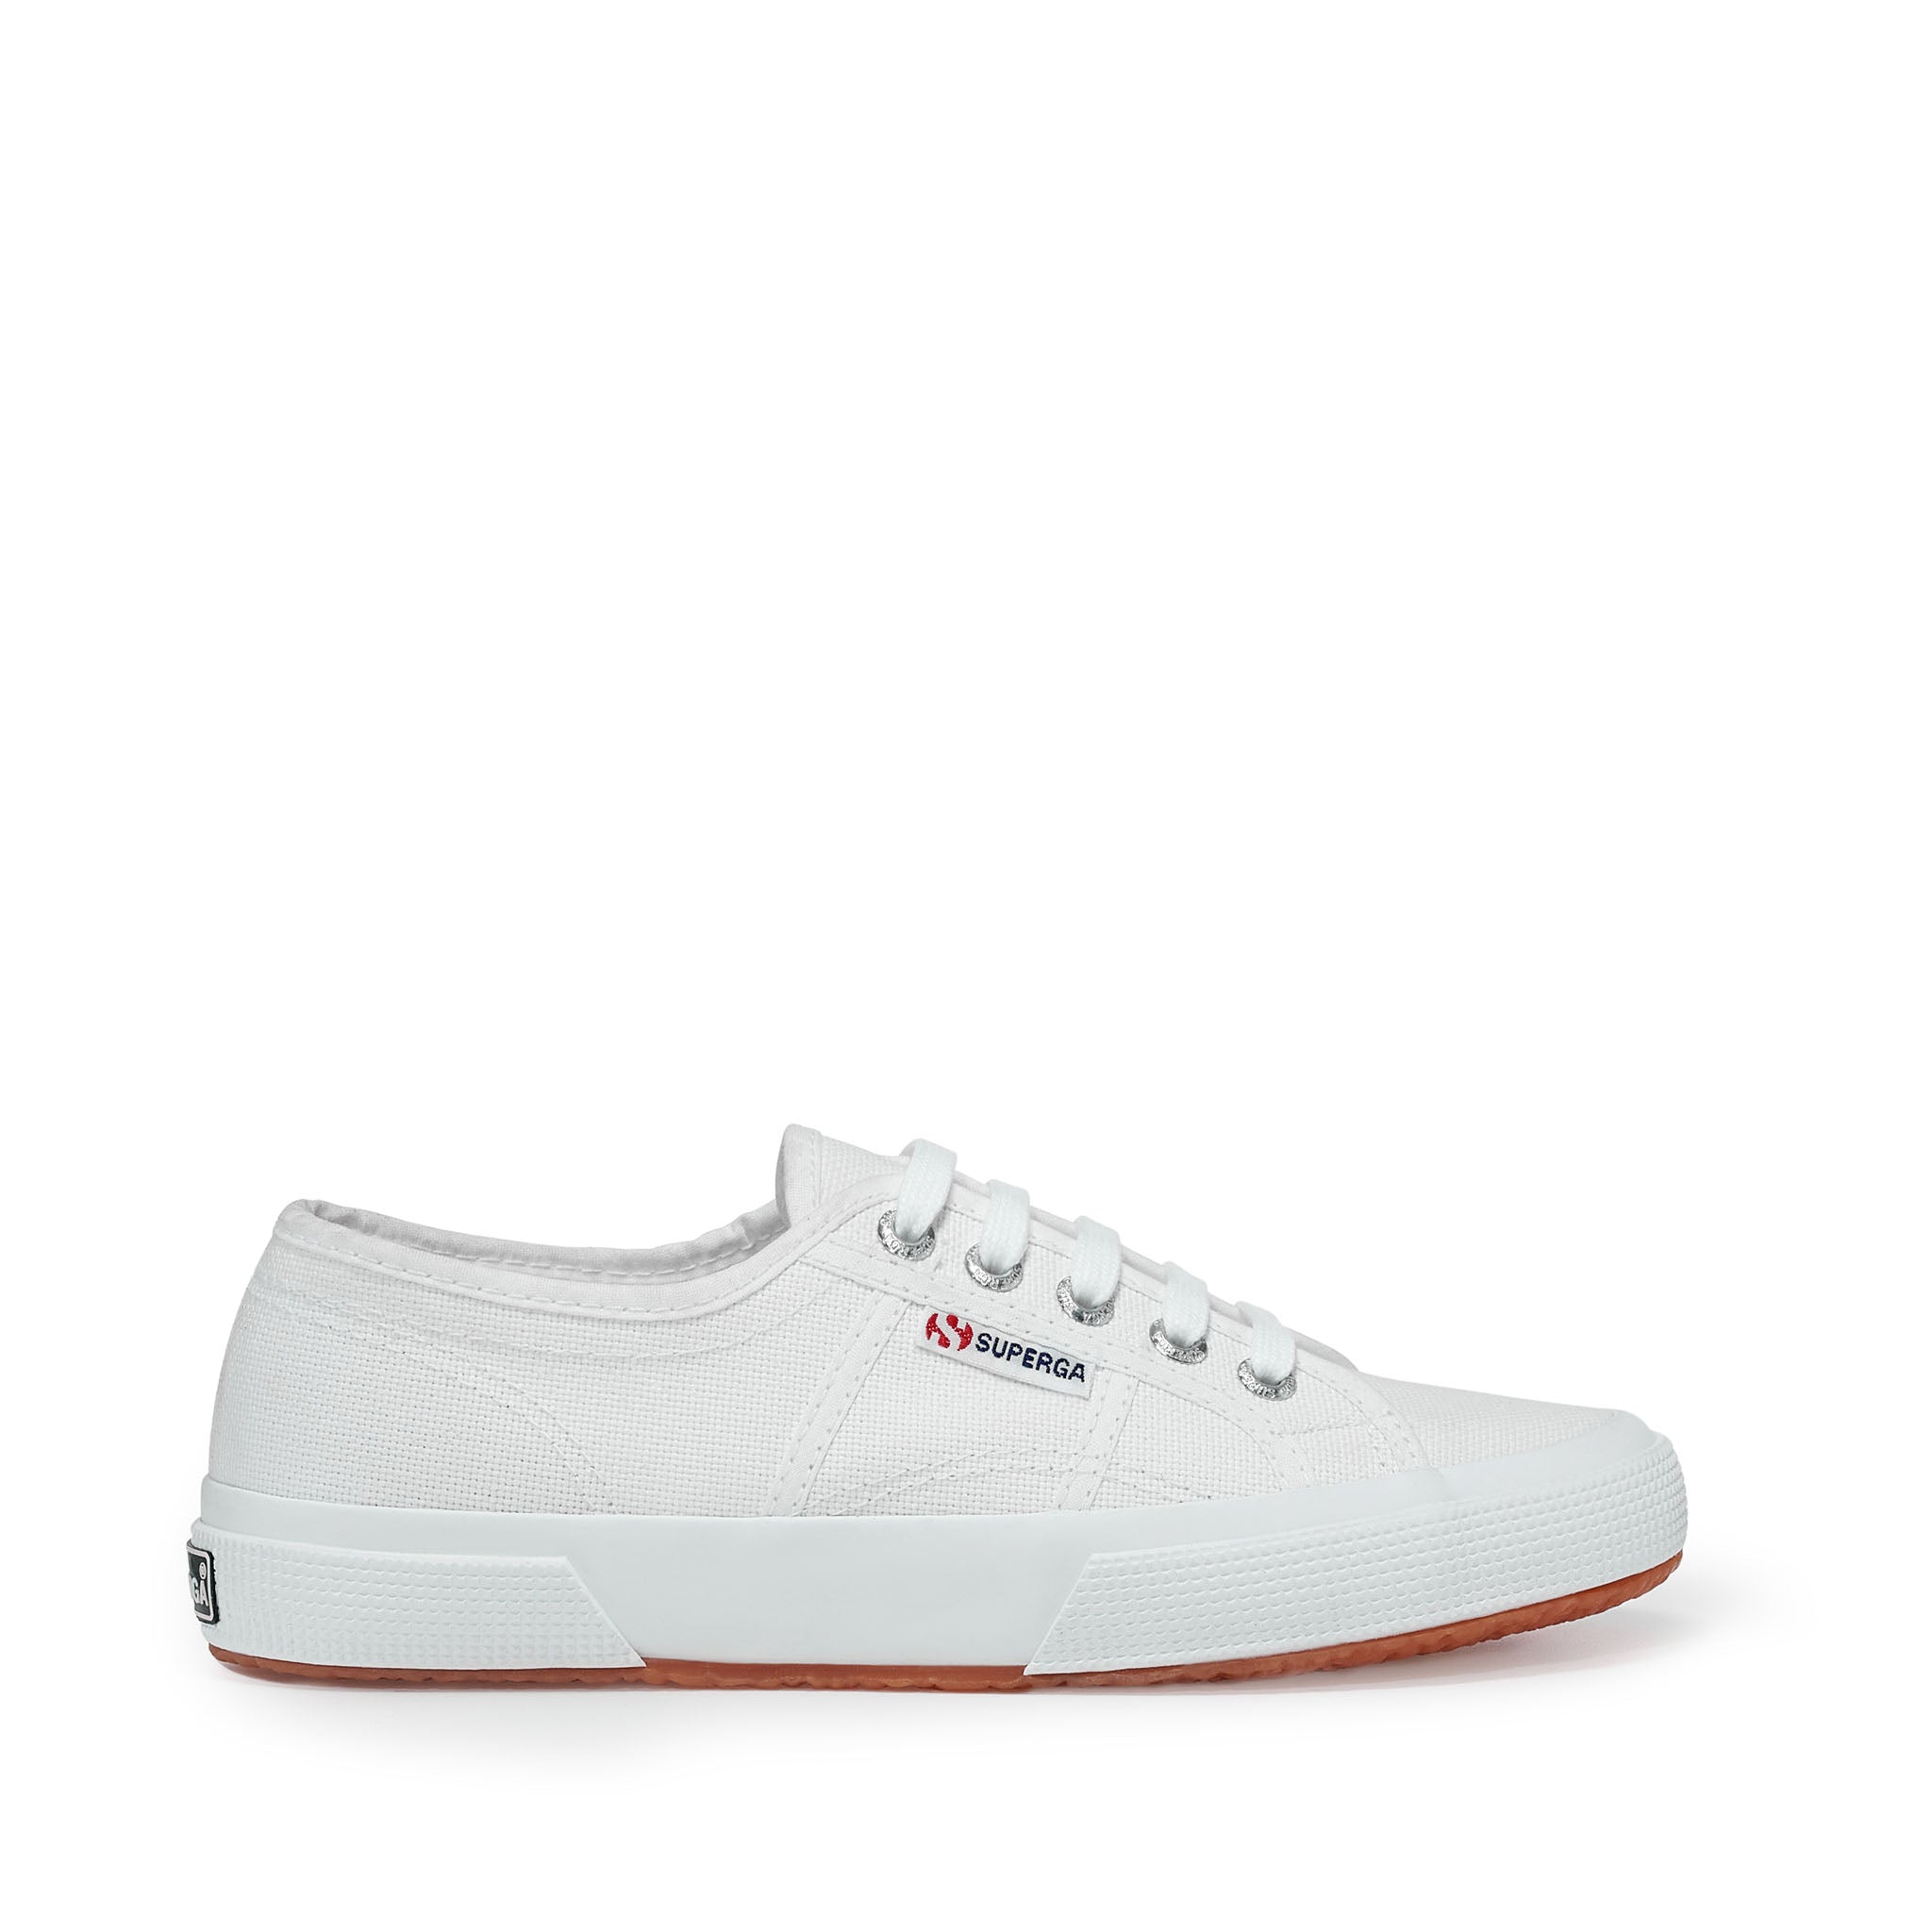 Superga - 2750 Cotu Classic Sneakers - White Superga US